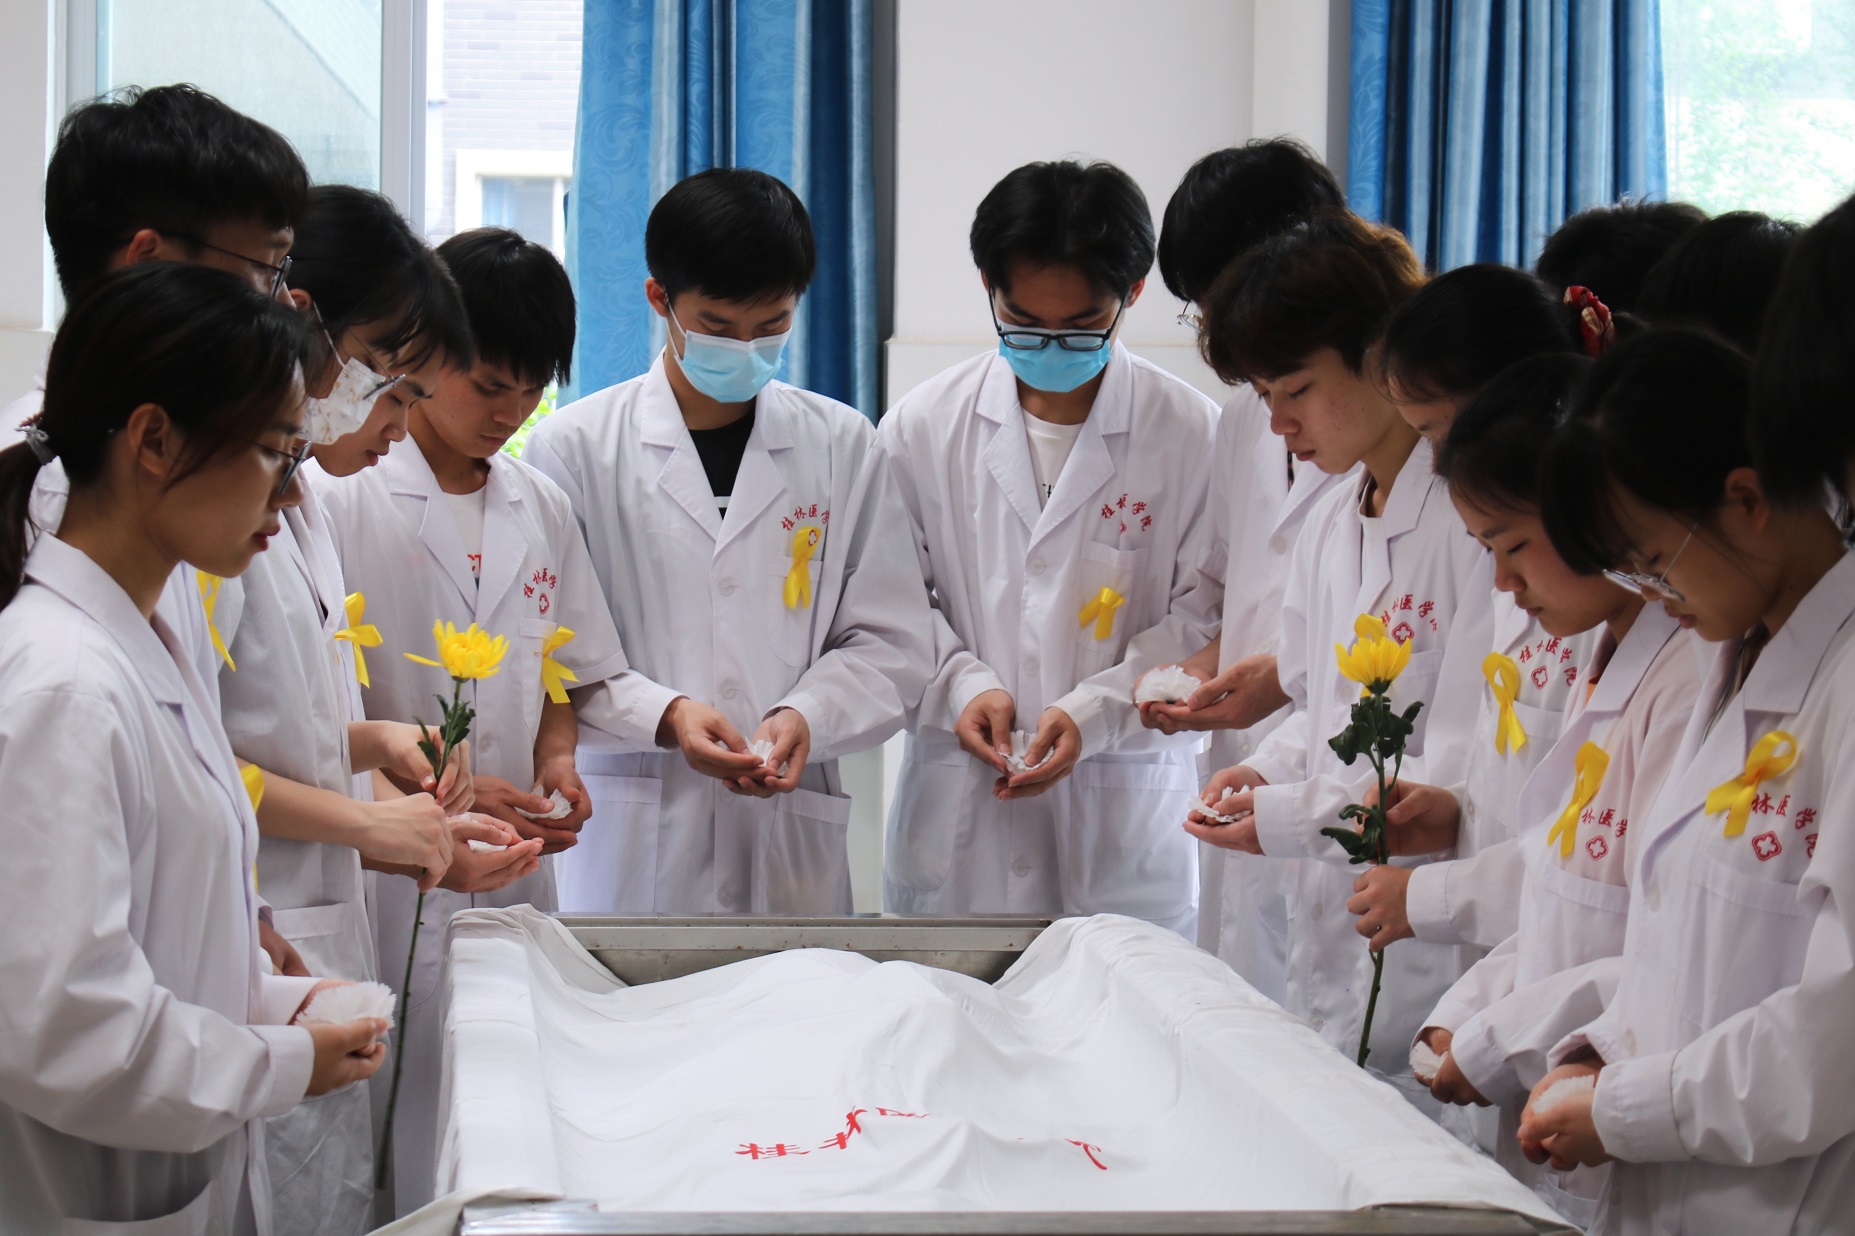 勉励医学生刻苦学习,不负大体老师的教导之恩,将桂林医学院弘德善医